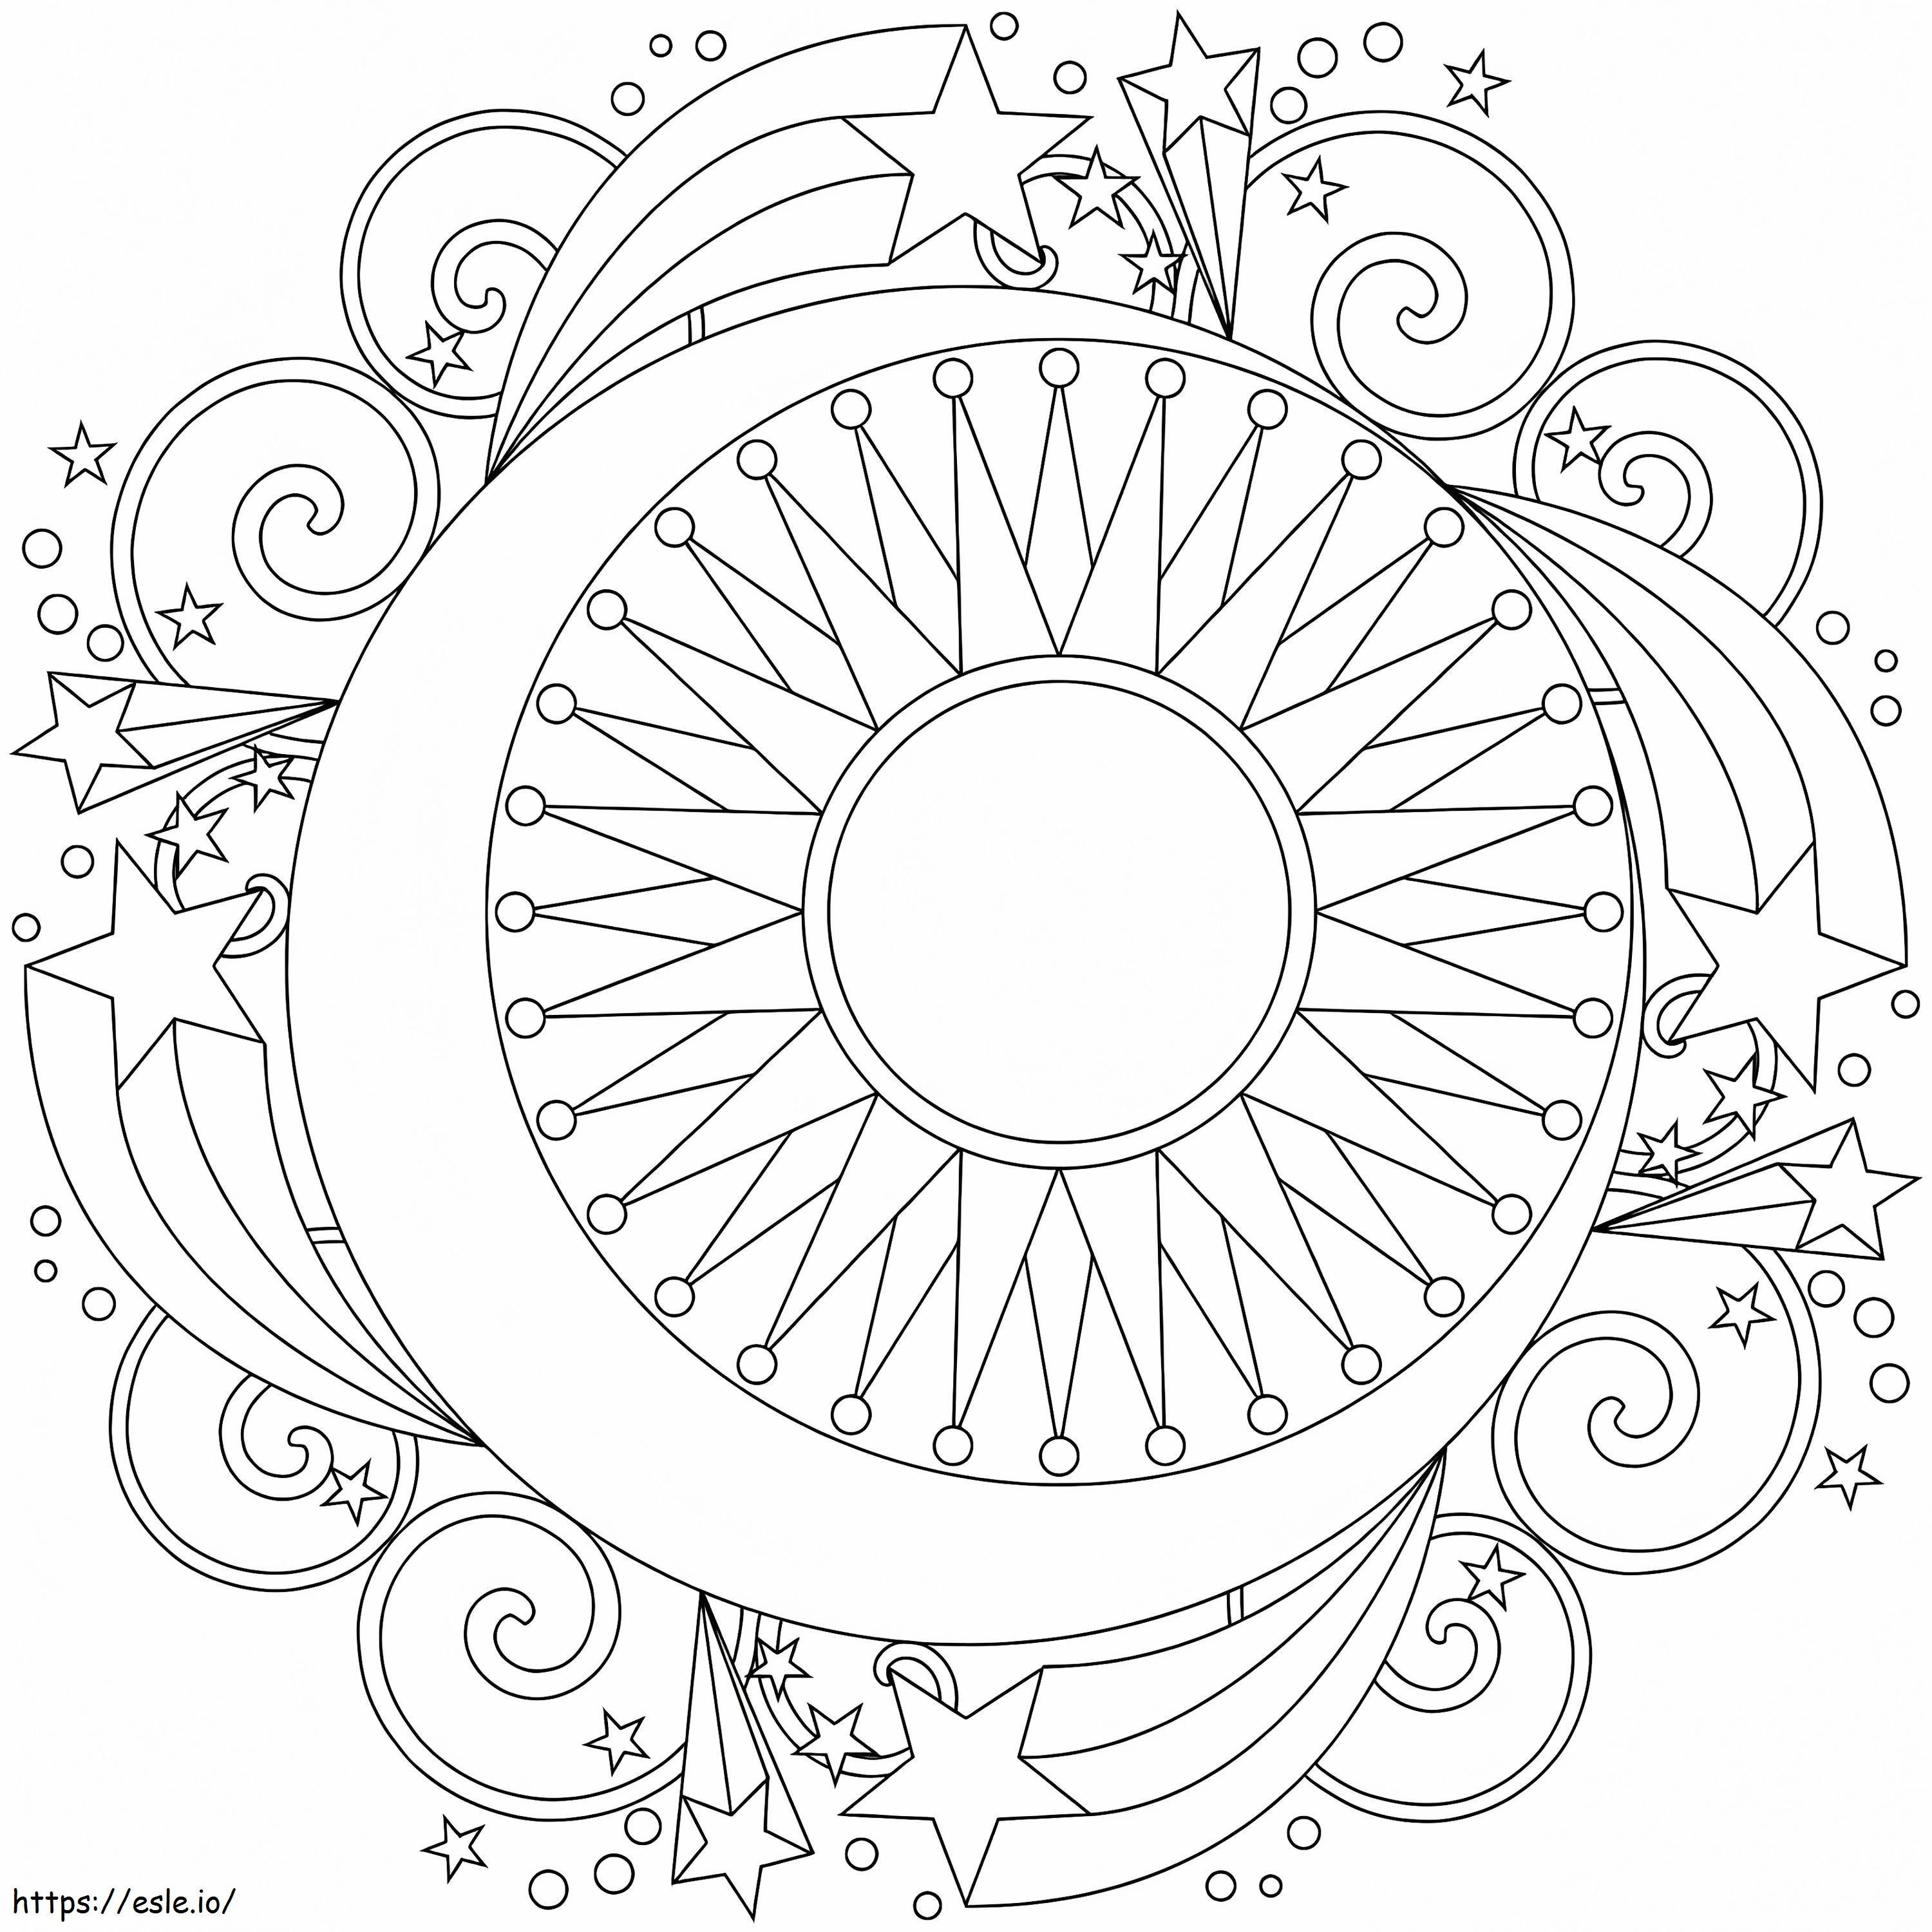 Spring Mandala 7 coloring page